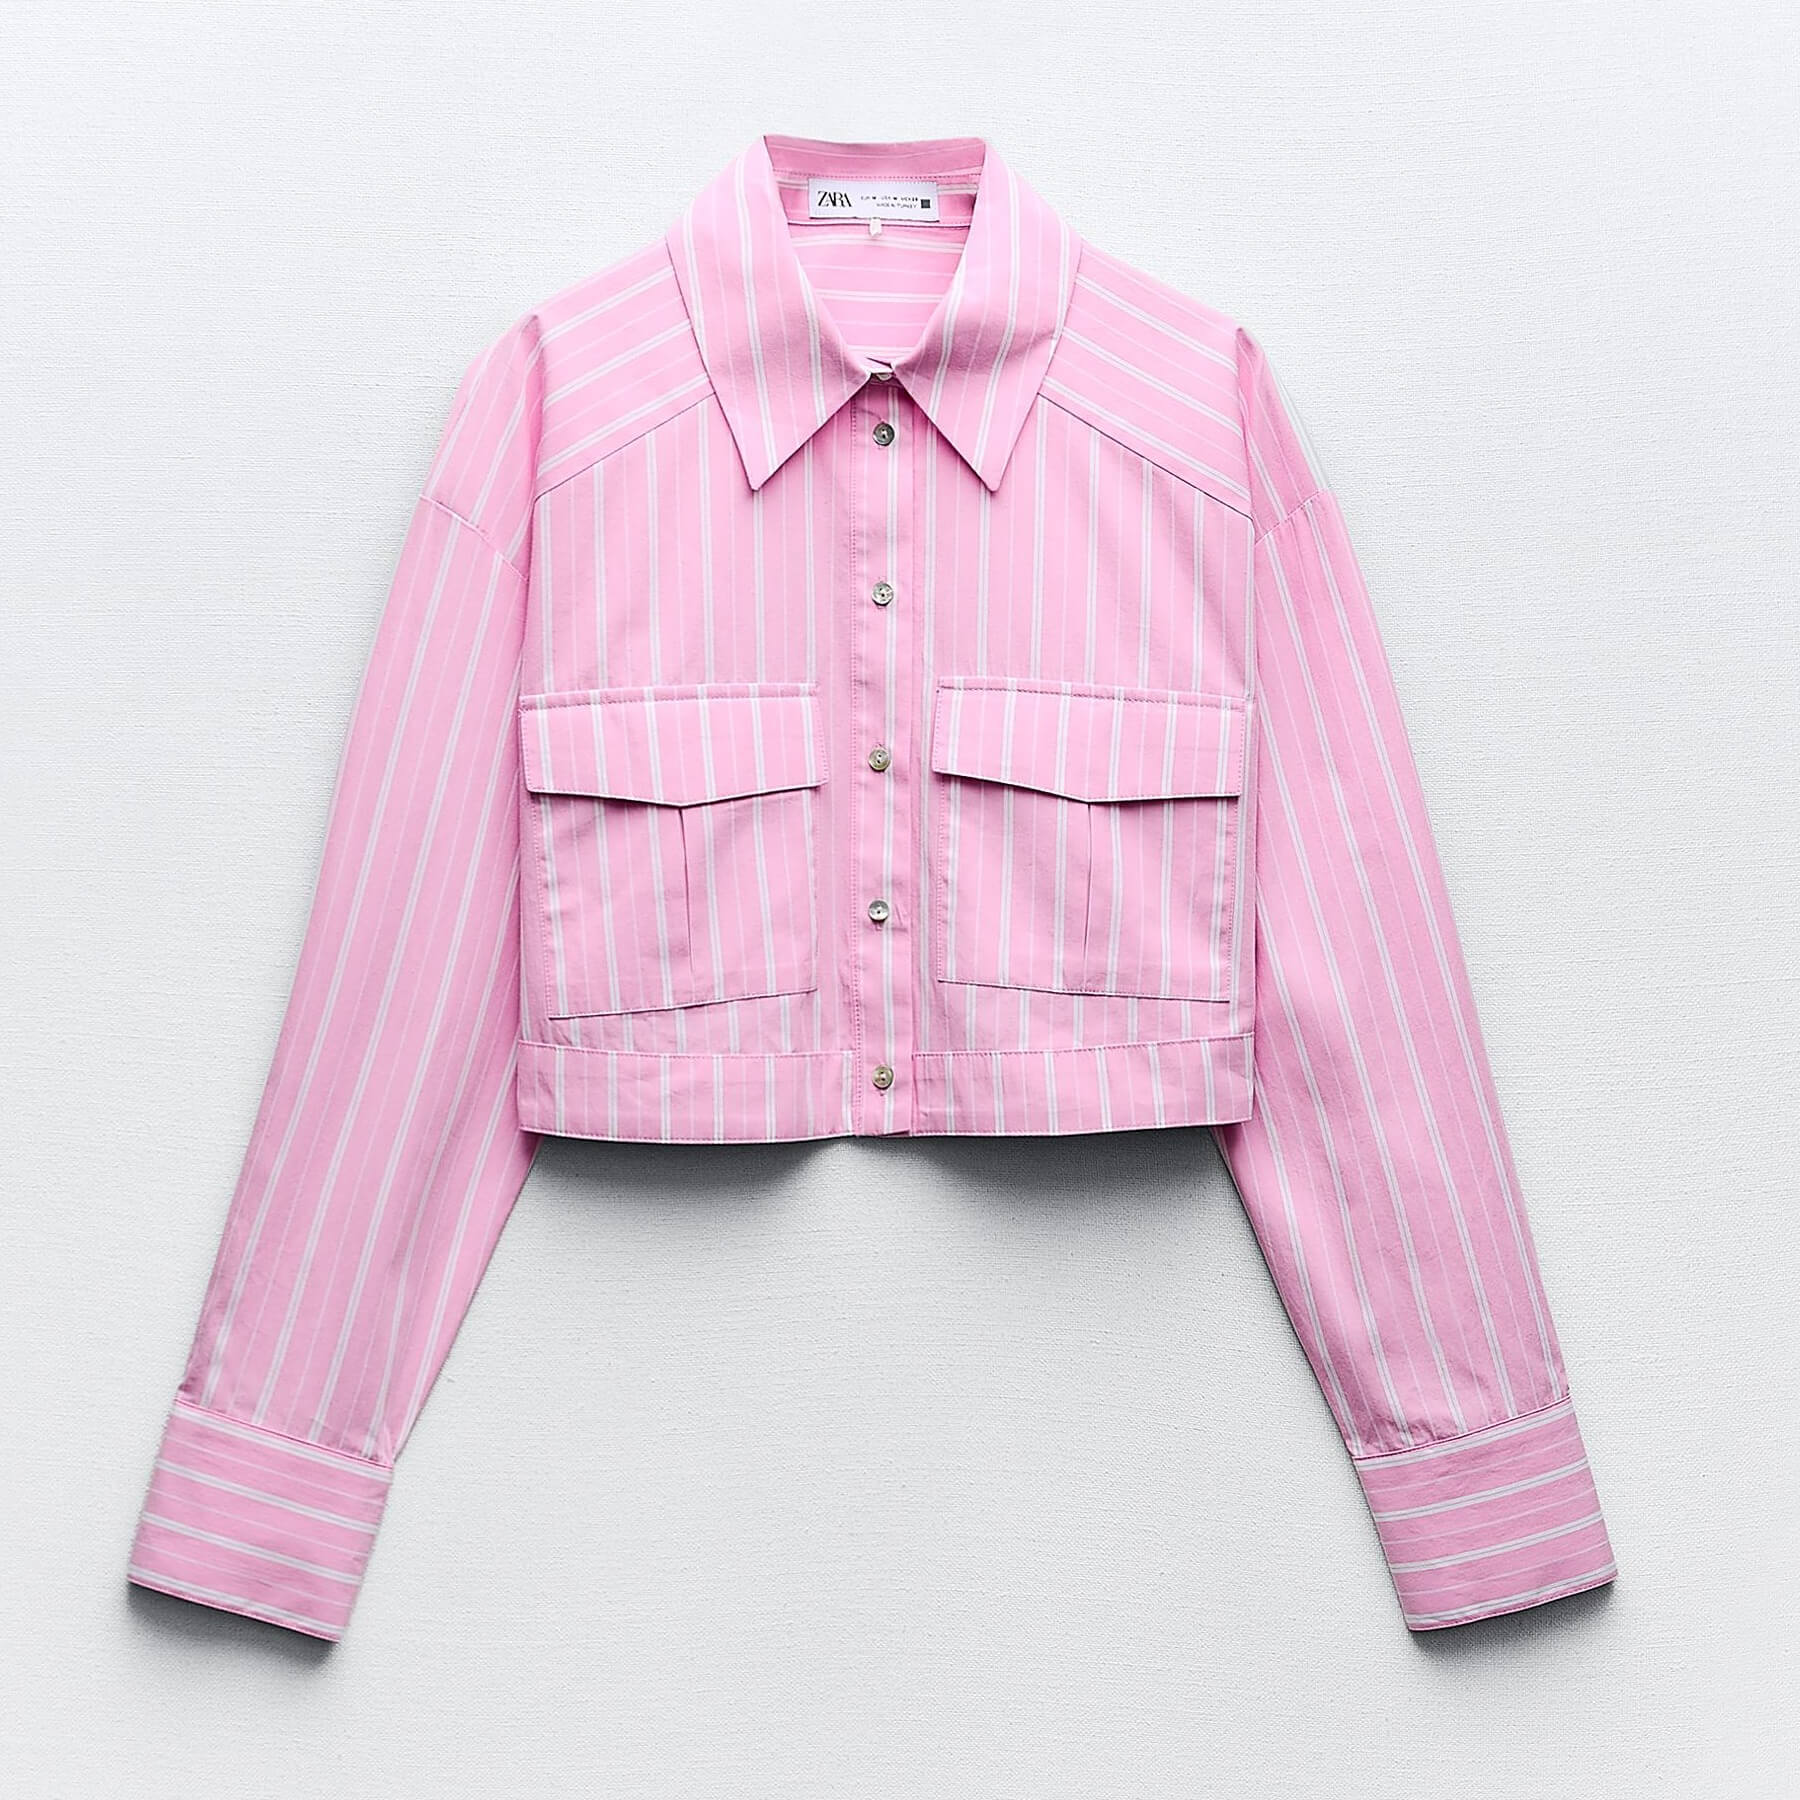 Рубашка Zara Cropped Striped, розовый/белый рубашка zara striped shirt голубой желтовато белый